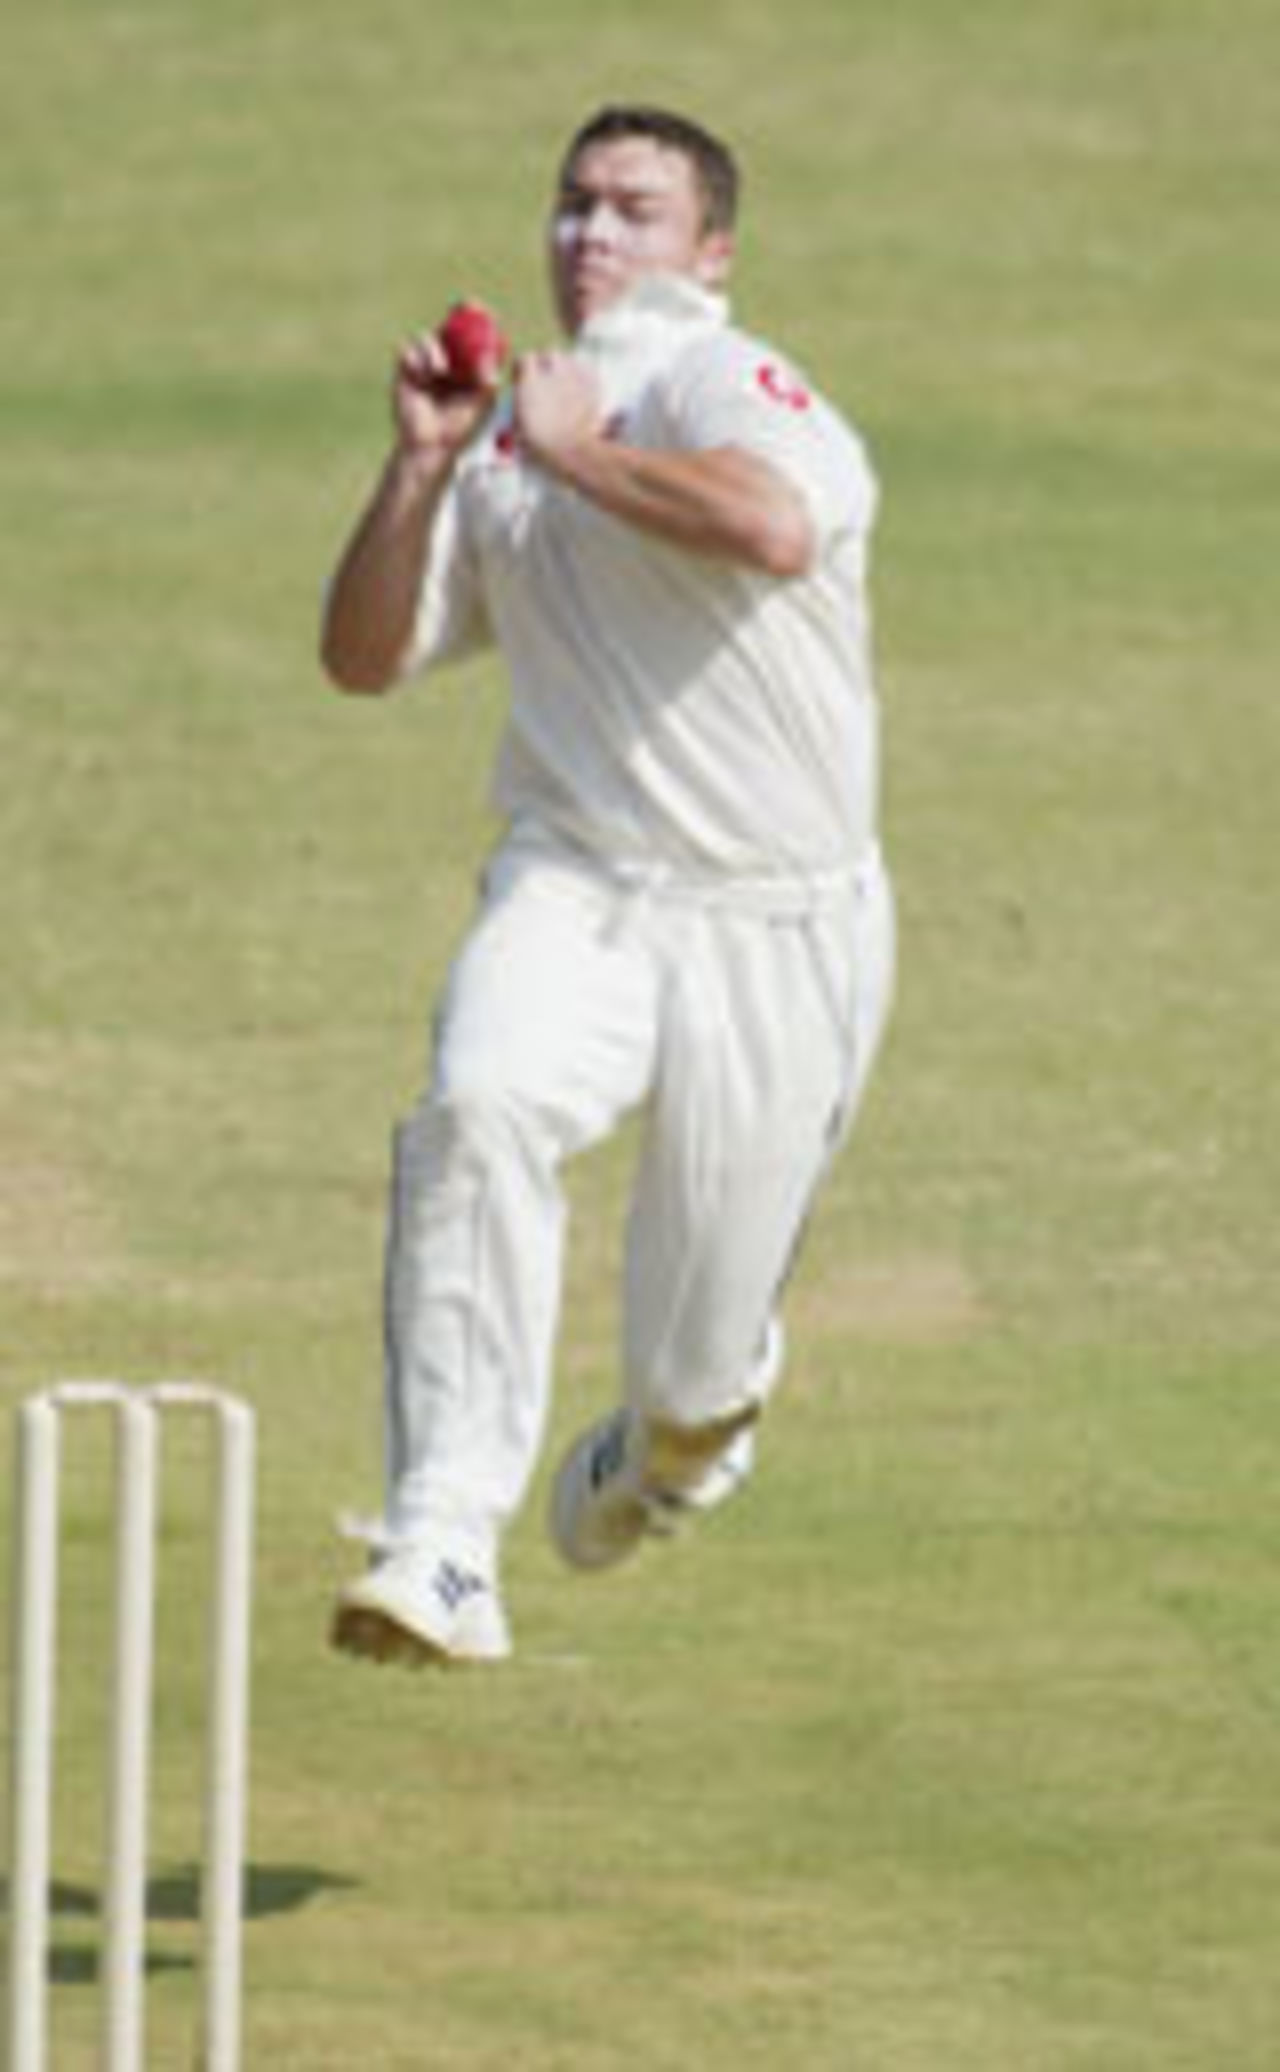 Graham Napier bowling, India A v England A, 1st ODI, Bangalore, February 9, 2004